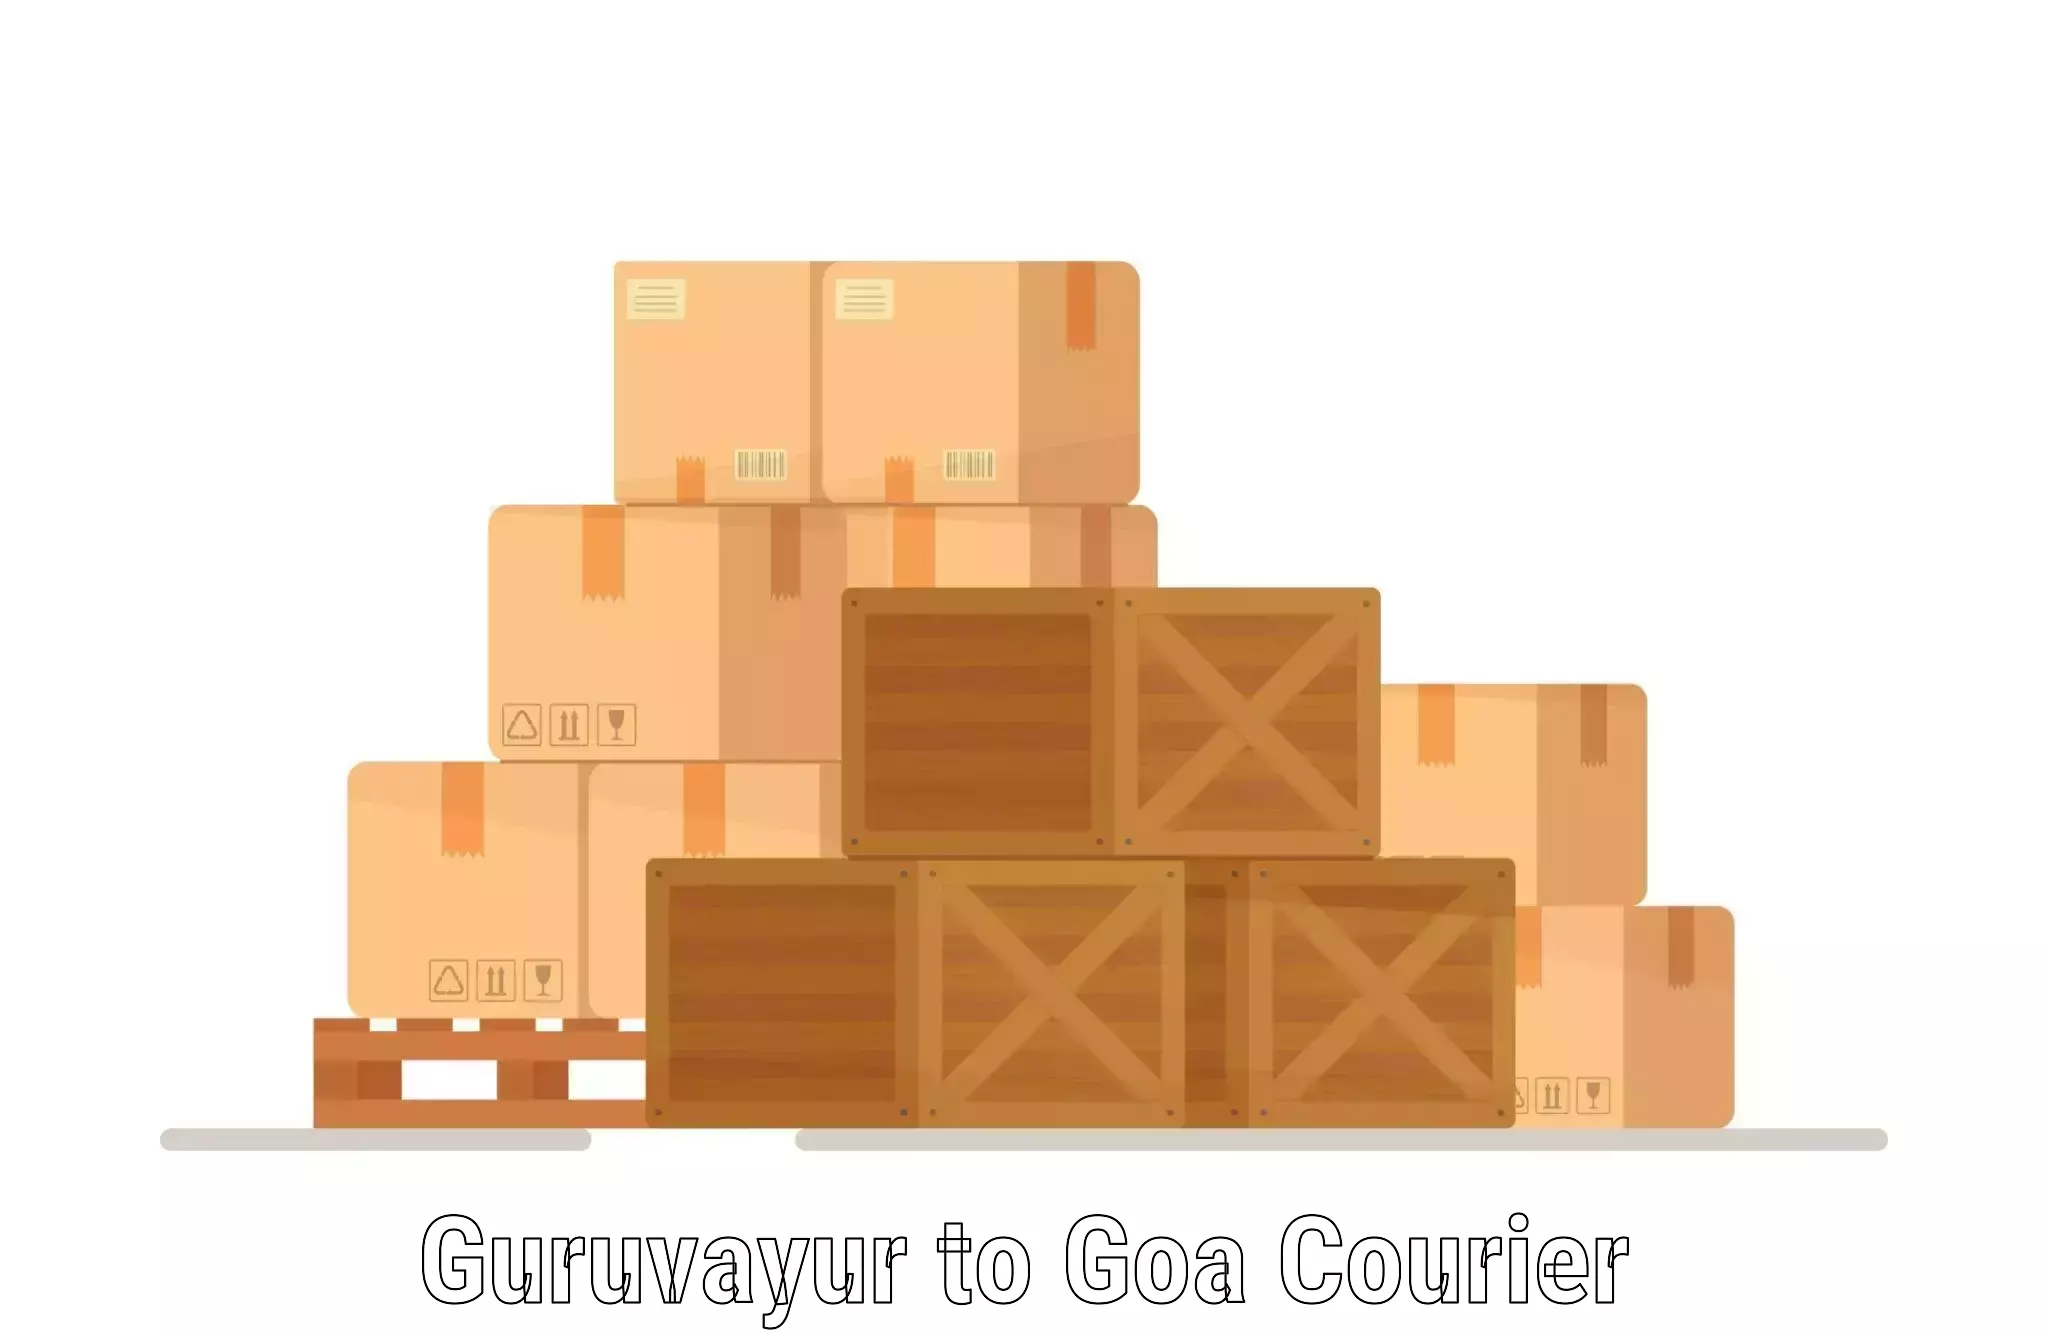 Courier service innovation Guruvayur to Goa University